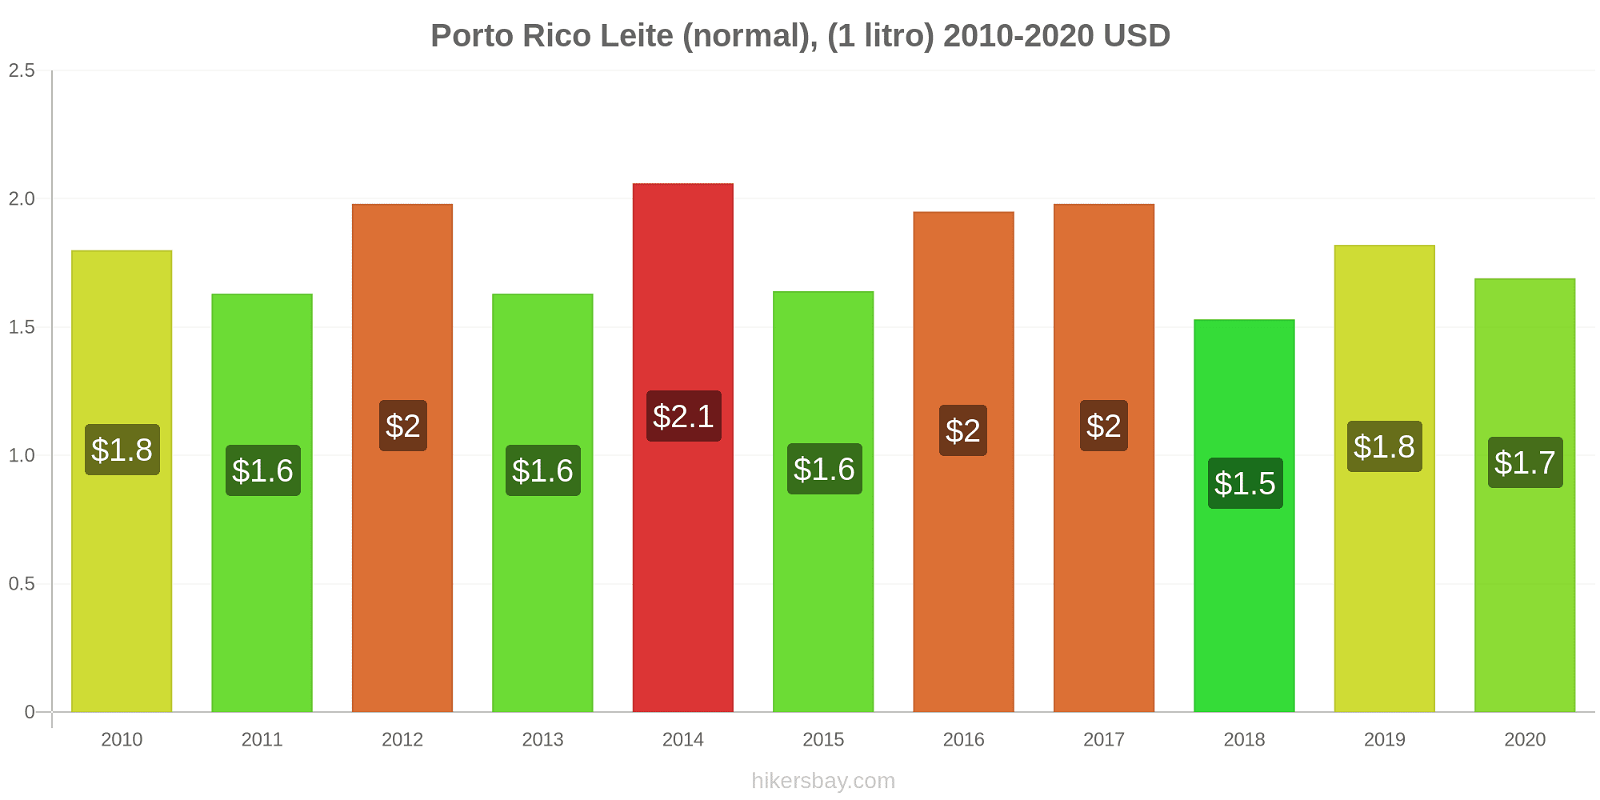 Porto Rico variação de preço (Regular), leite (1 litro) hikersbay.com